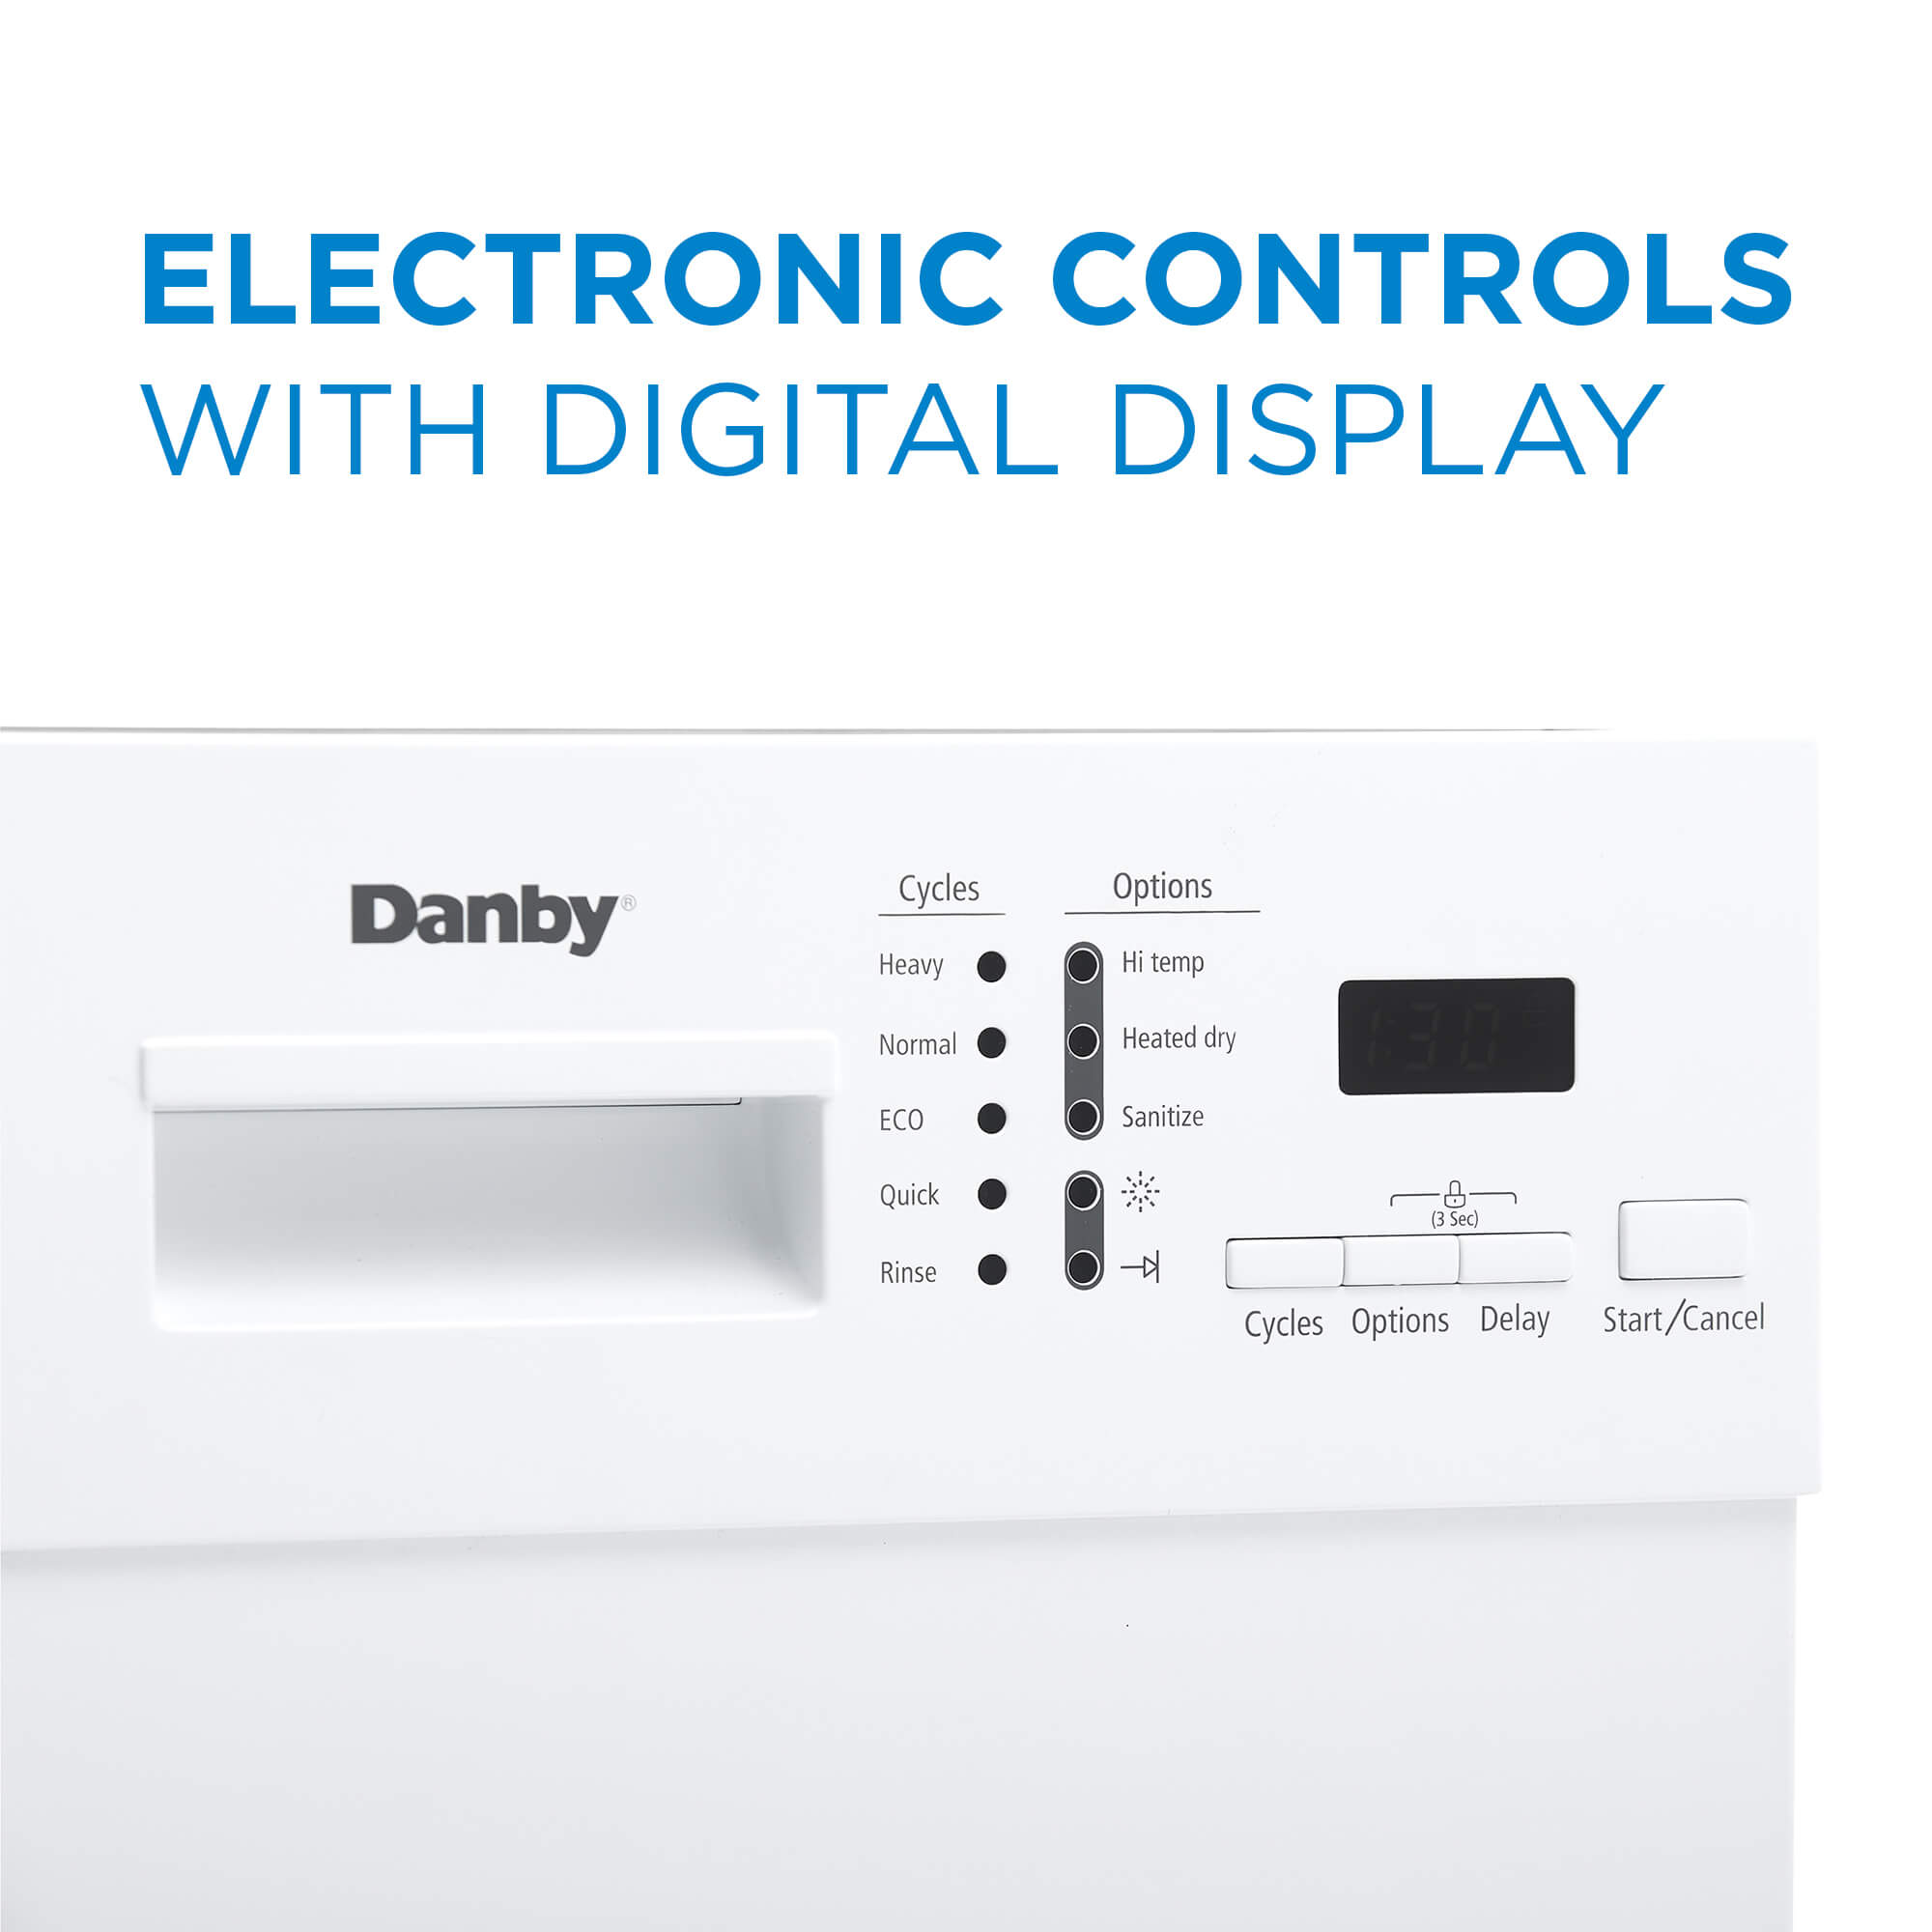 Danby 18 White Built-In Dishwasher